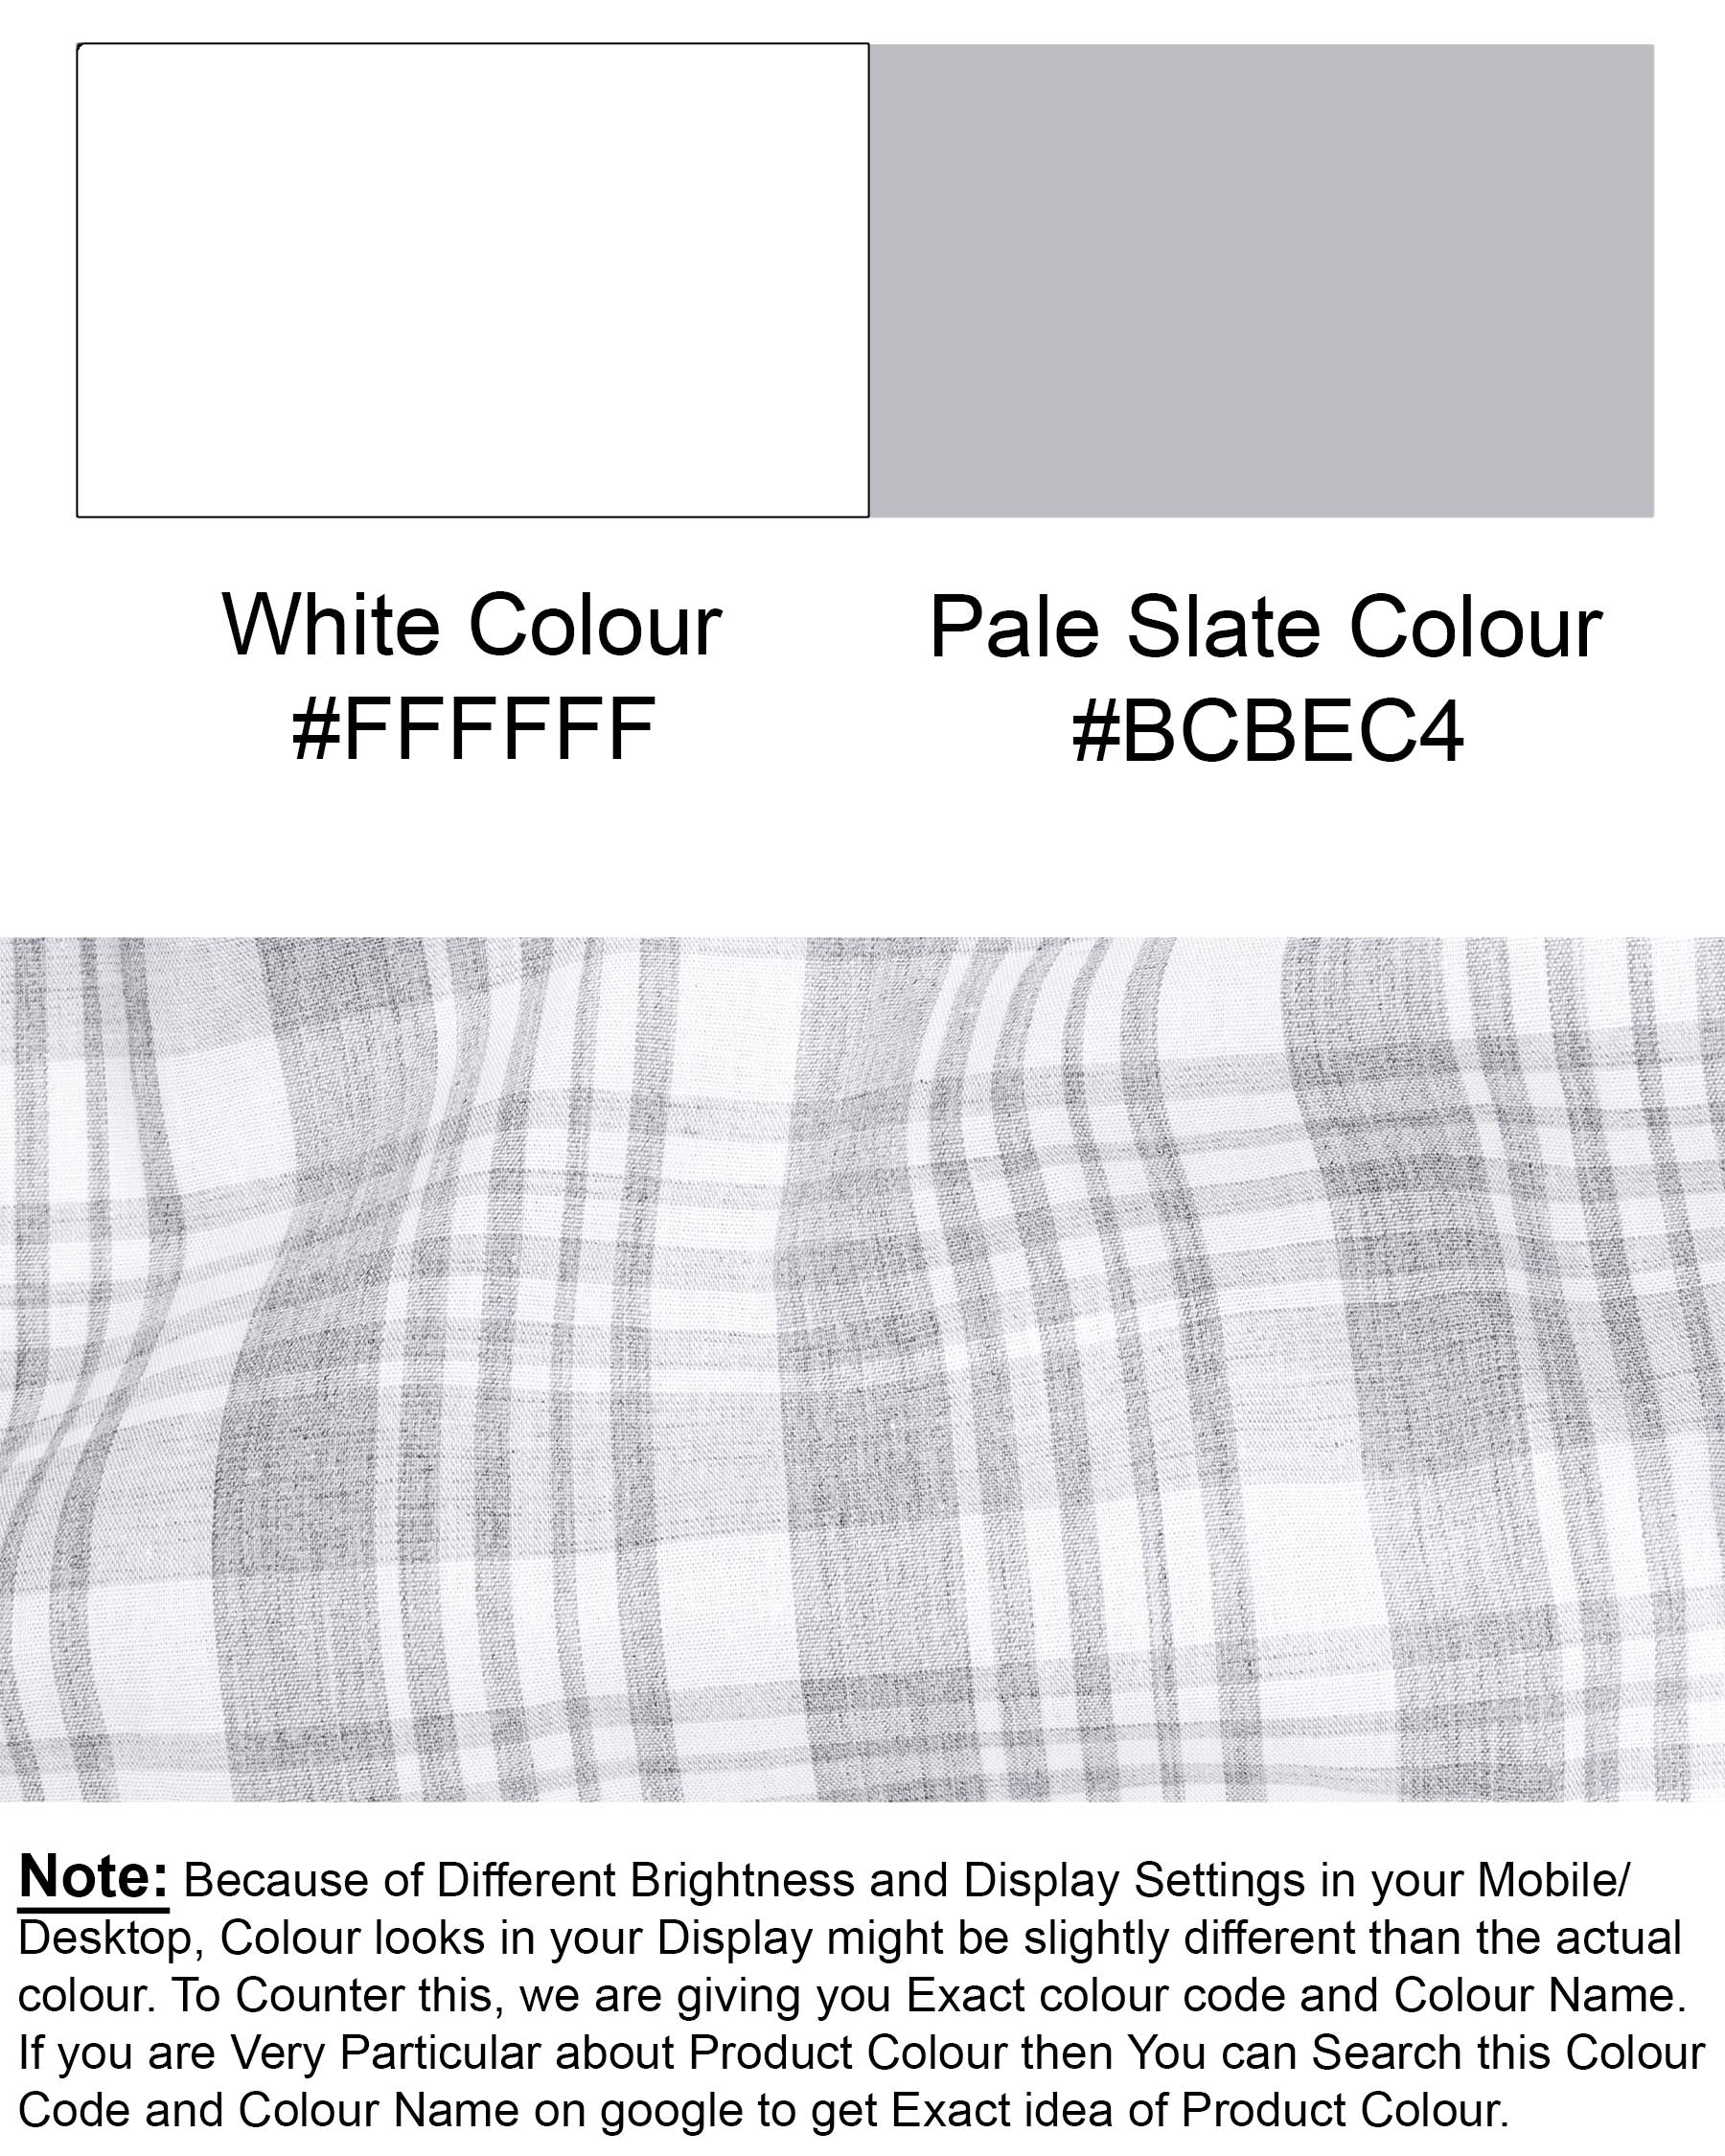 Bright White with Pale Slate Gray Premium Cotton Shirt 6952-BLK-38,6952-BLK-38,6952-BLK-39,6952-BLK-39,6952-BLK-40,6952-BLK-40,6952-BLK-42,6952-BLK-42,6952-BLK-44,6952-BLK-44,6952-BLK-46,6952-BLK-46,6952-BLK-48,6952-BLK-48,6952-BLK-50,6952-BLK-50,6952-BLK-52,6952-BLK-52